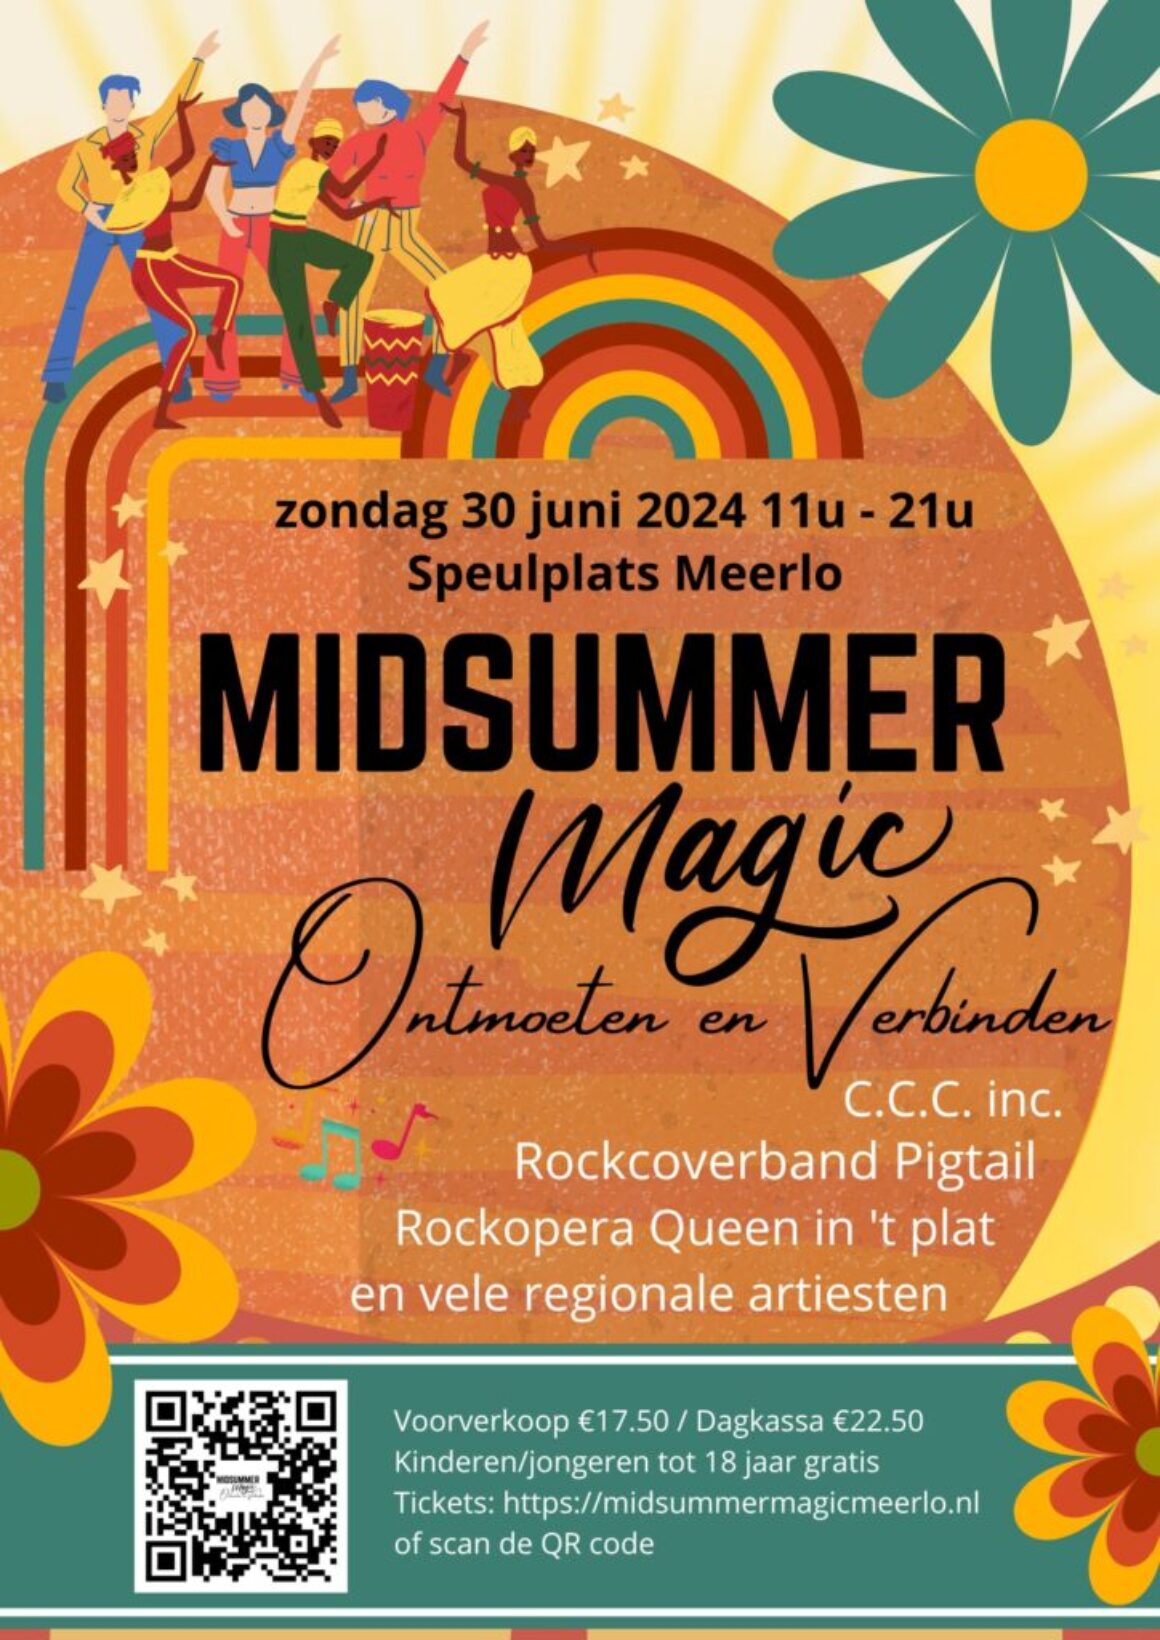 30 juni 2024: Midsummer Magic Meerlo